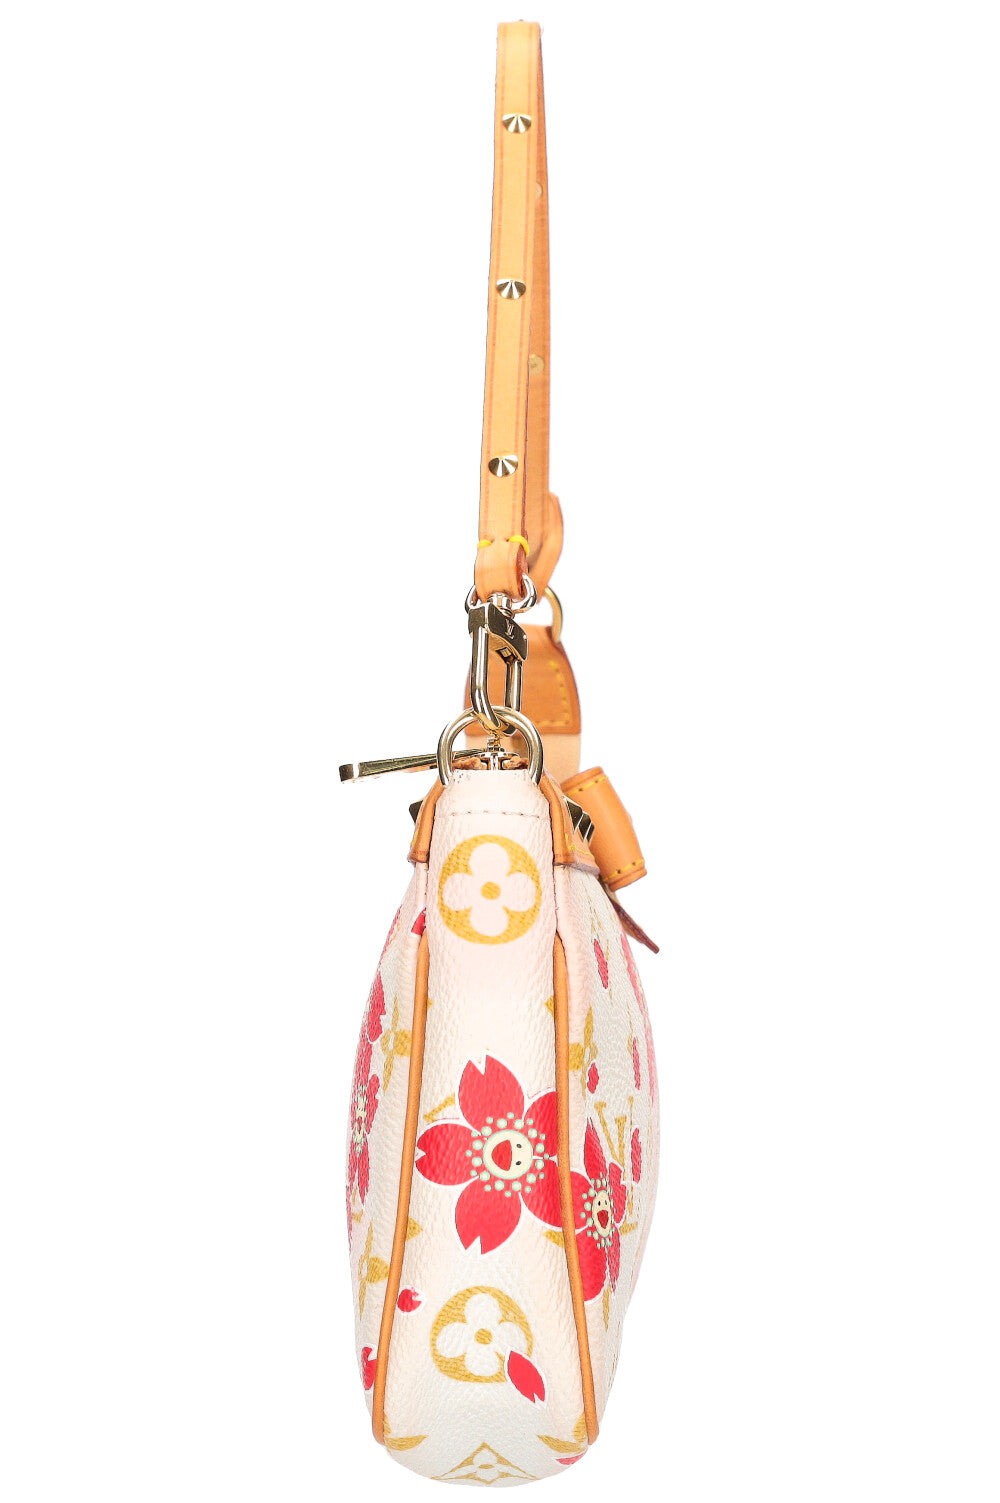 Louis Vuitton Murakami Cherry Blossom Basketball - murakami post - Imgur